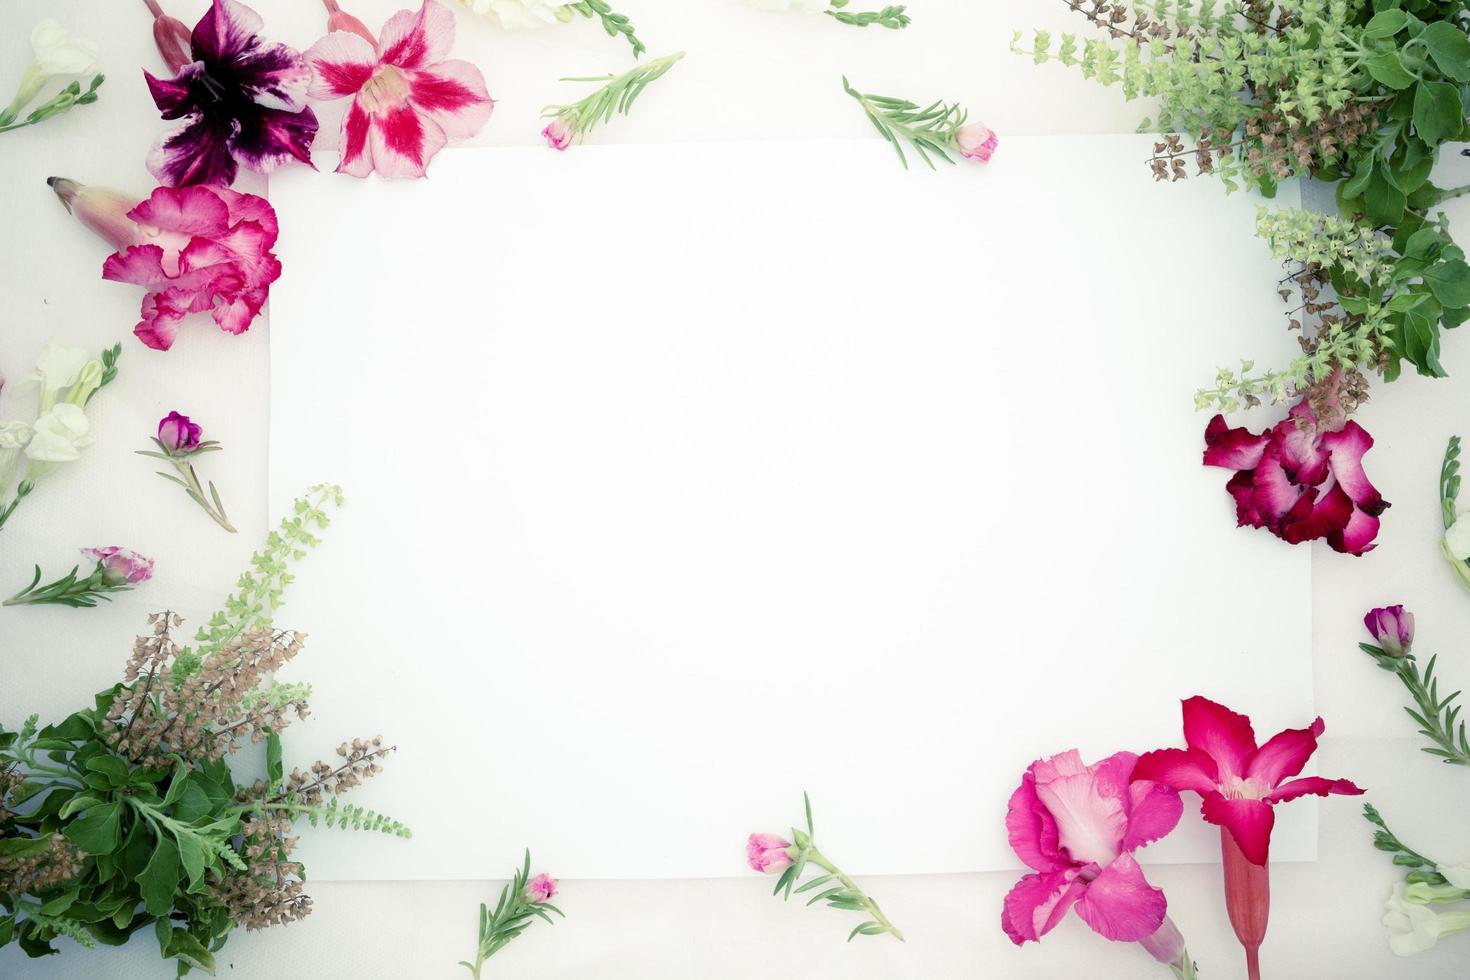 rosa azalea blommor, vita asystasia gangetica blommor, grön basilika och blankt pappersark på en rosa bakgrund. vårkant rosa och vit blomma, ovanifrån, svart papper för text, platt lay. foto